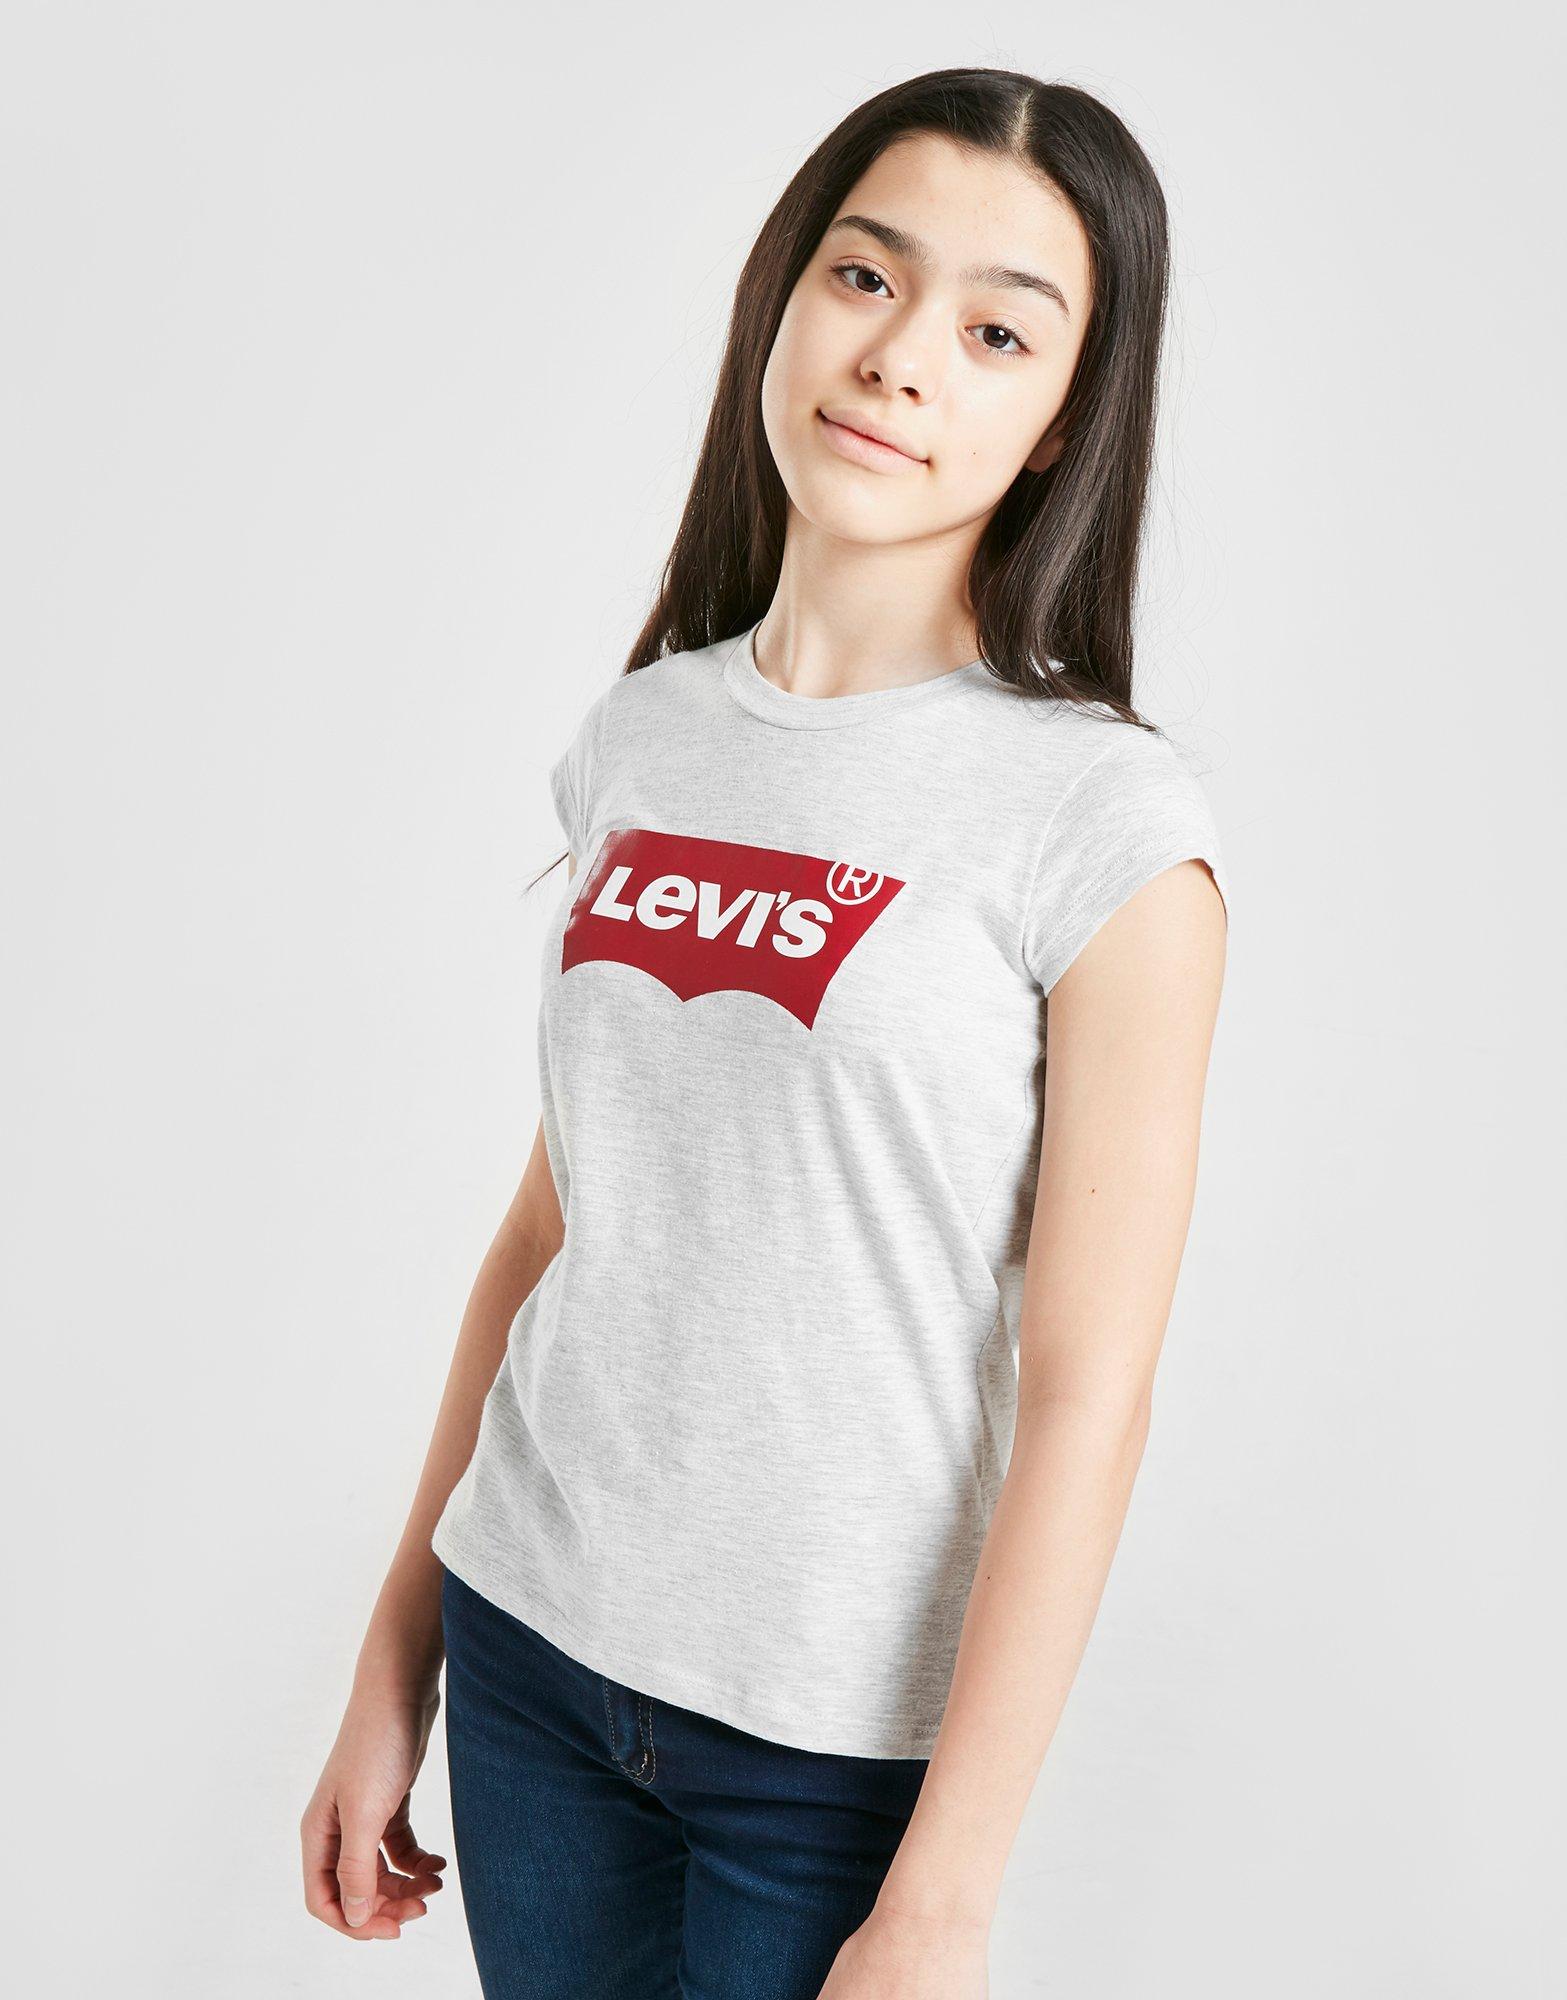 levis tshirt girls